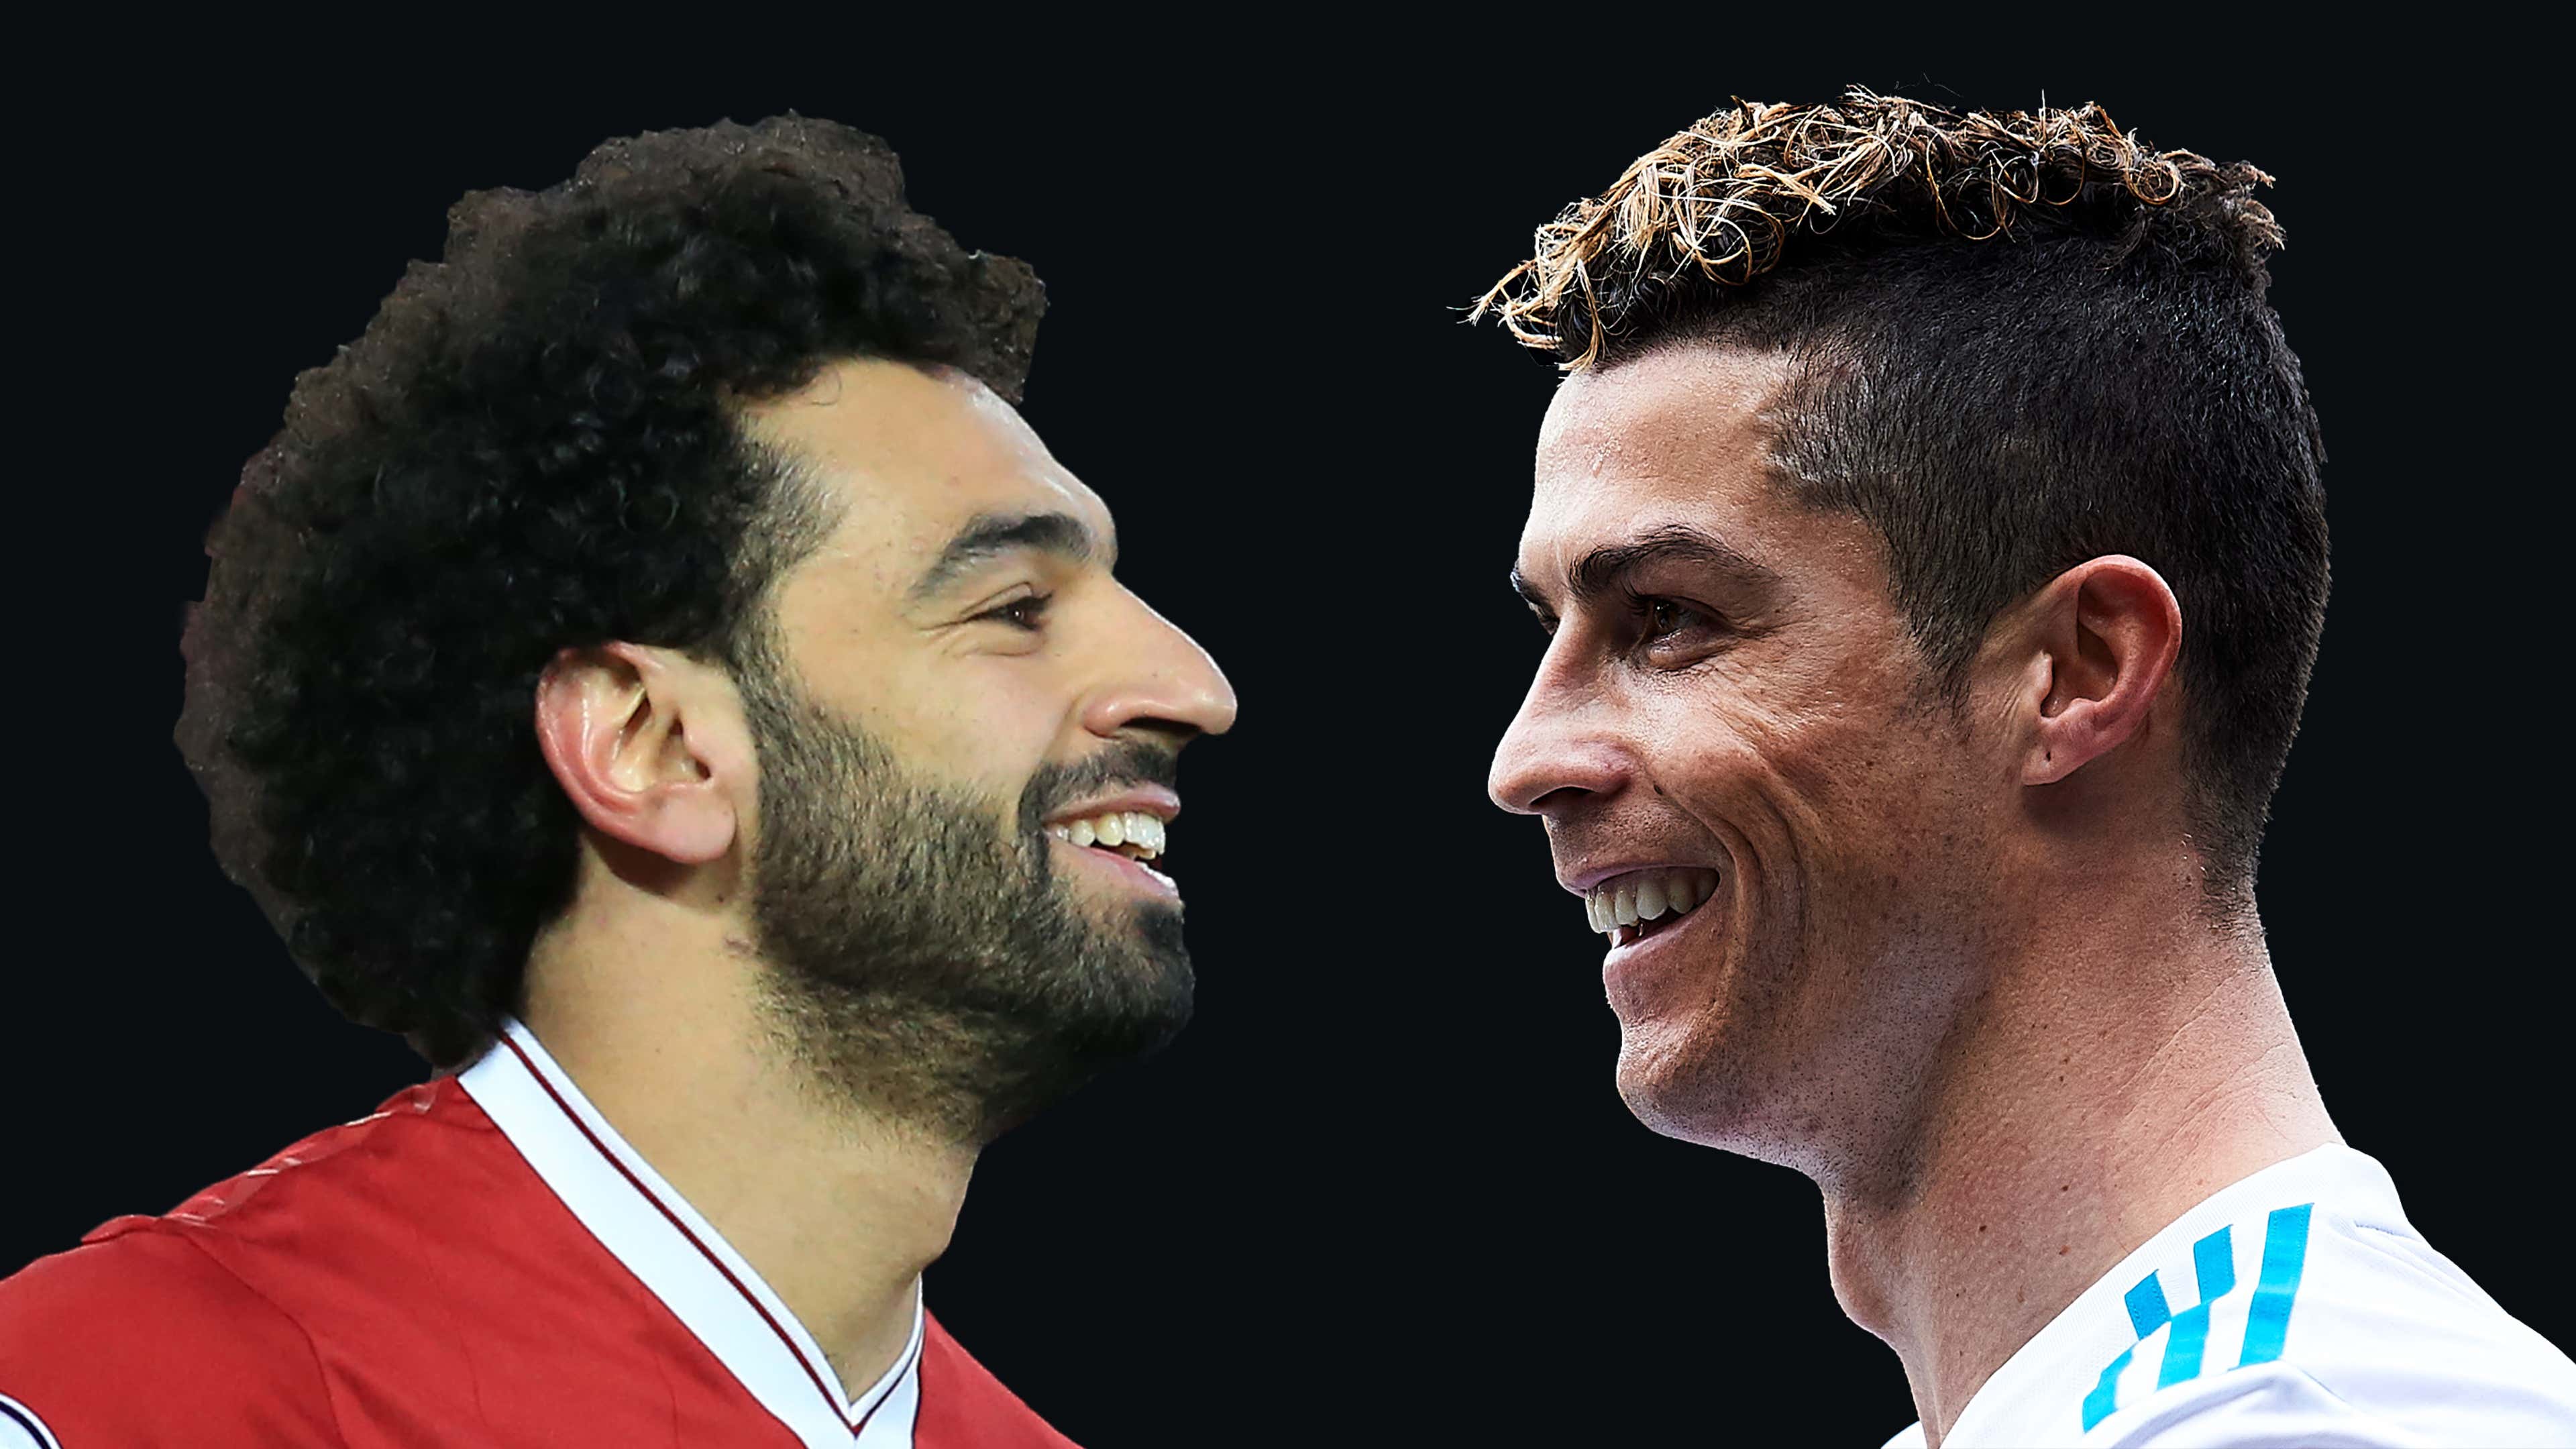 Comparado a Cristiano Ronaldo, Salah tem transformação física